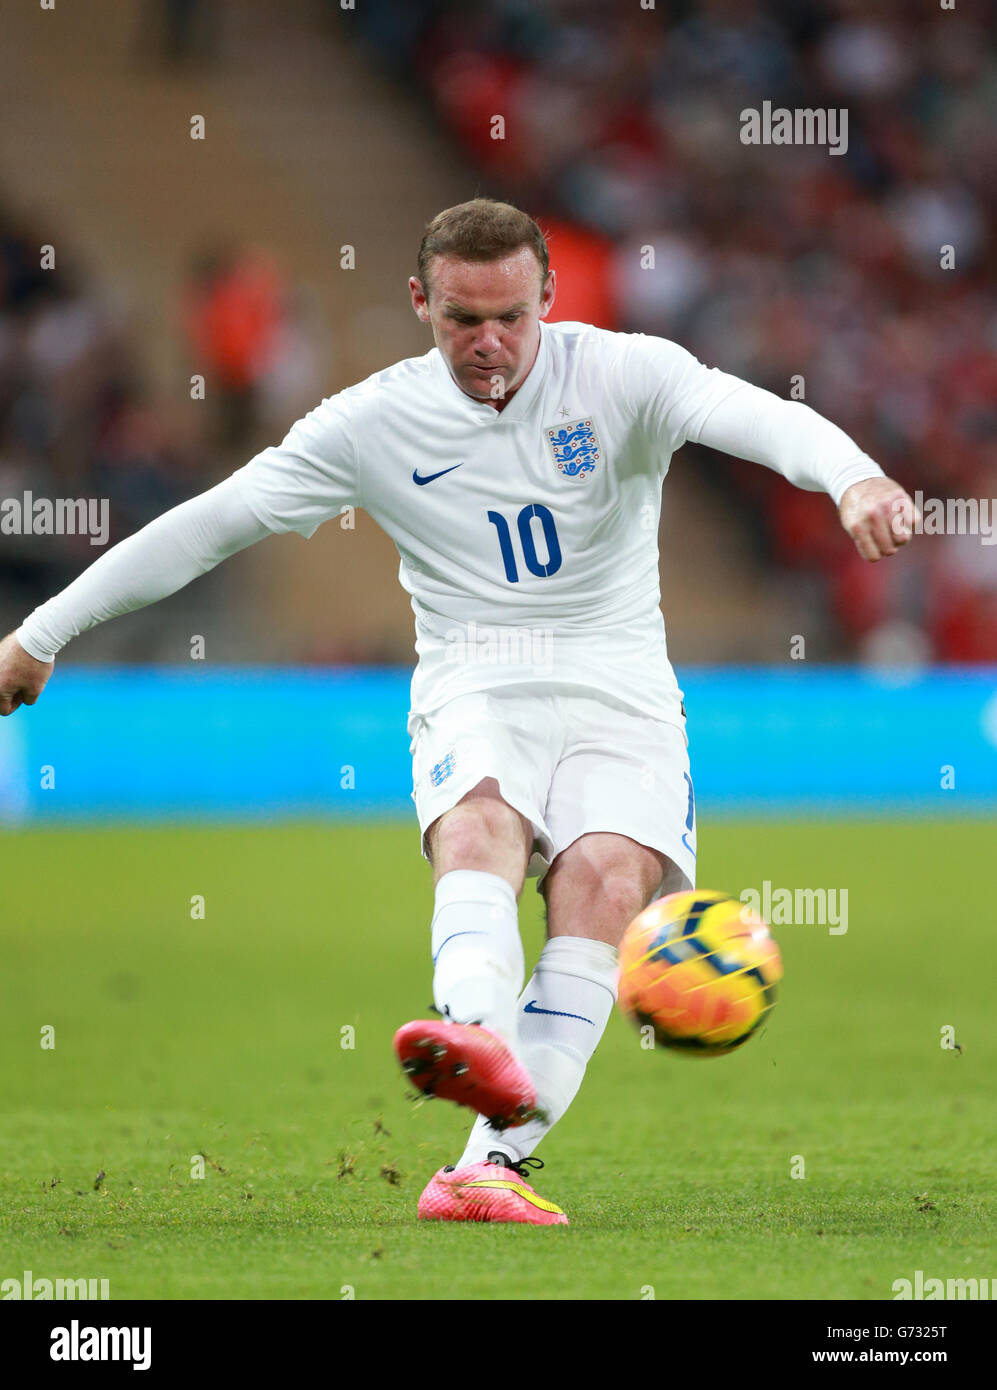 Fútbol - Copa Mundial 2014 - Friendly - England contra Peru - Estadio Wembley. Wayne Rooney de Inglaterra en acción Foto de stock